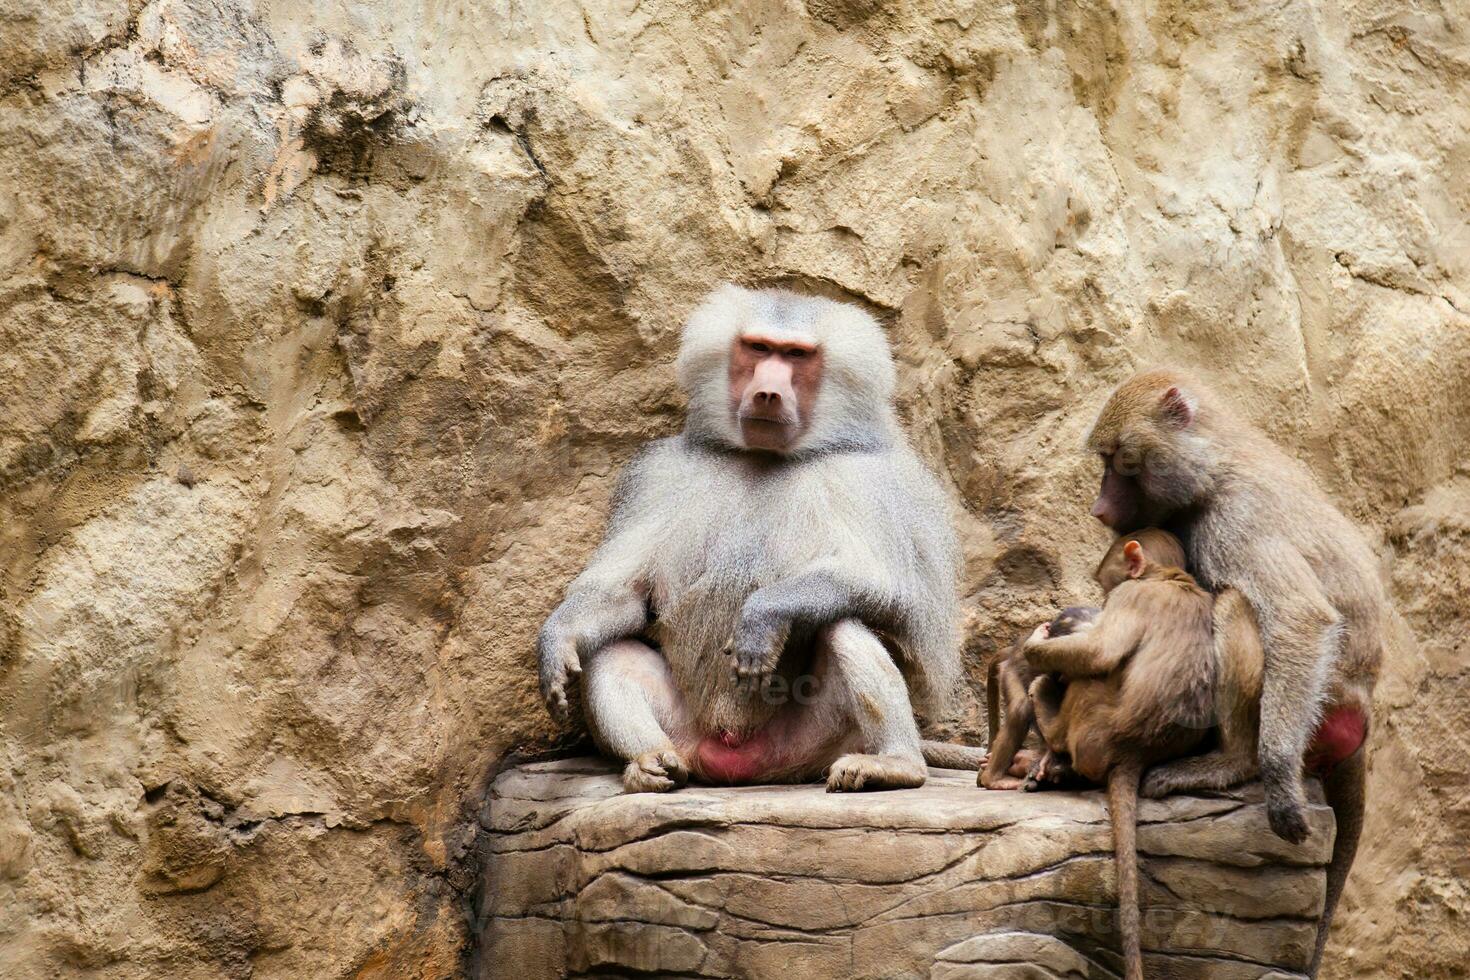 Baboons family in captivity. hamadryas baboon photo